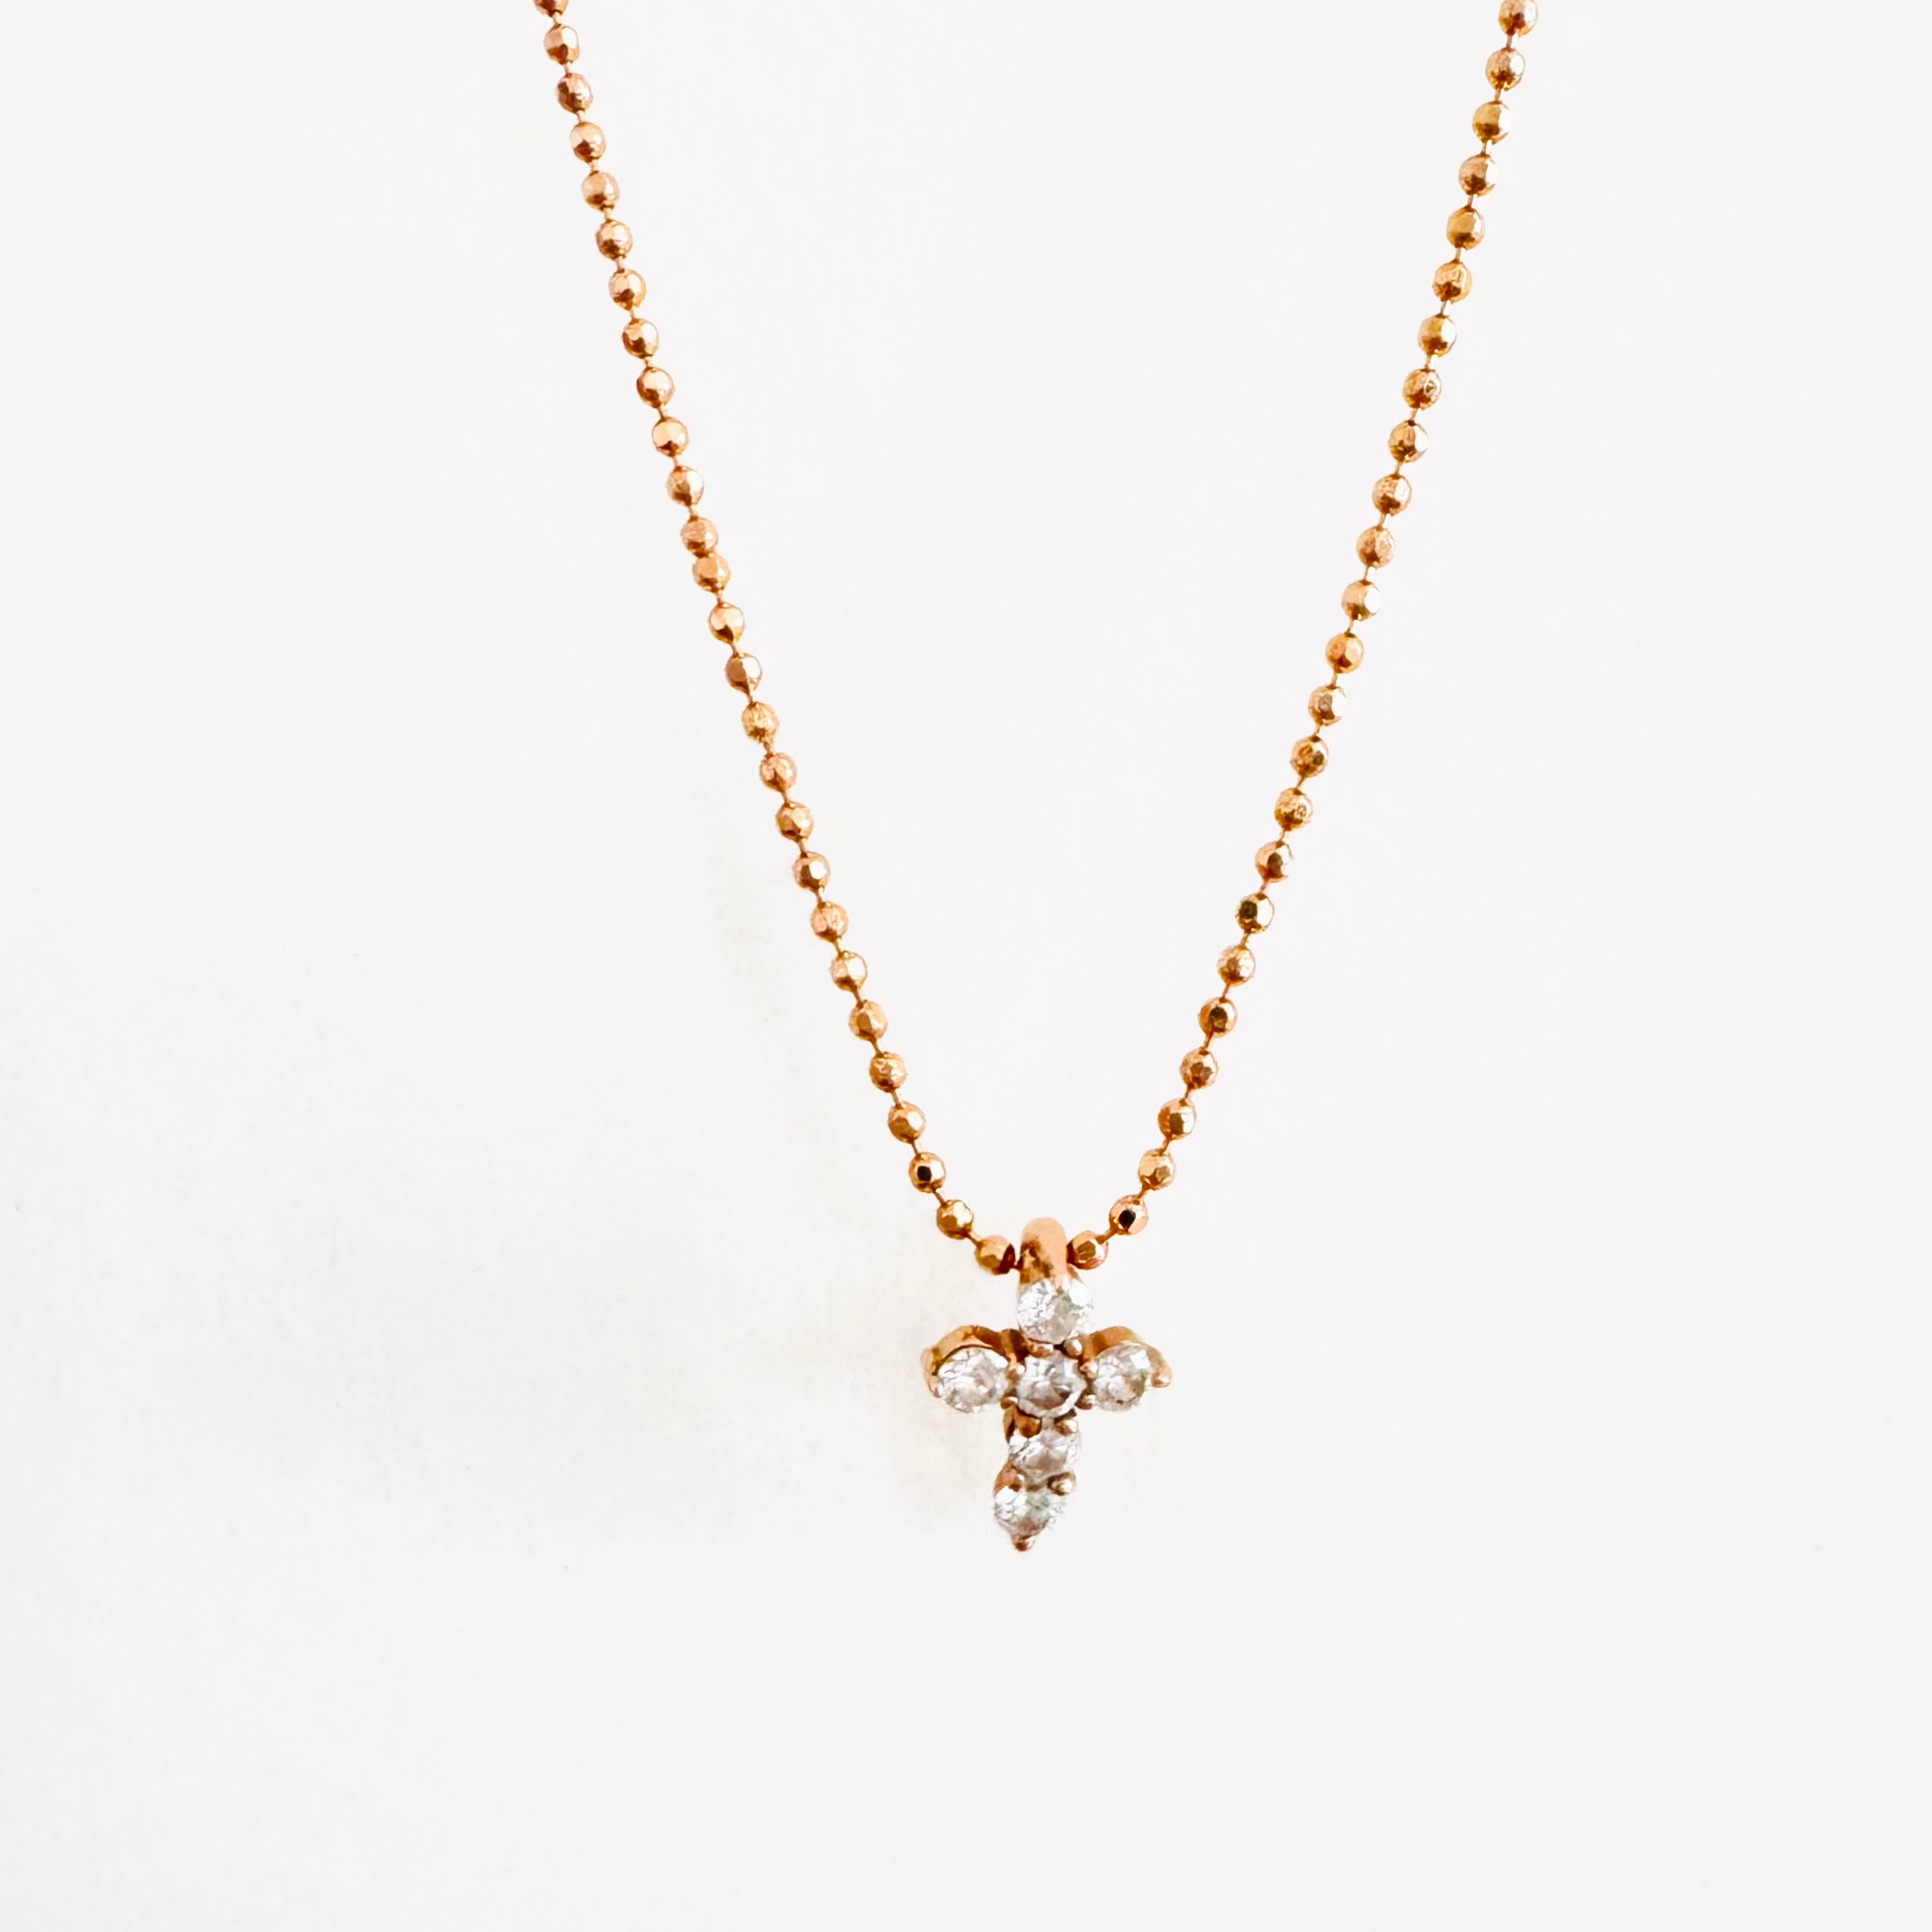 The Petite Diamond Cross Necklace - Sample Sale